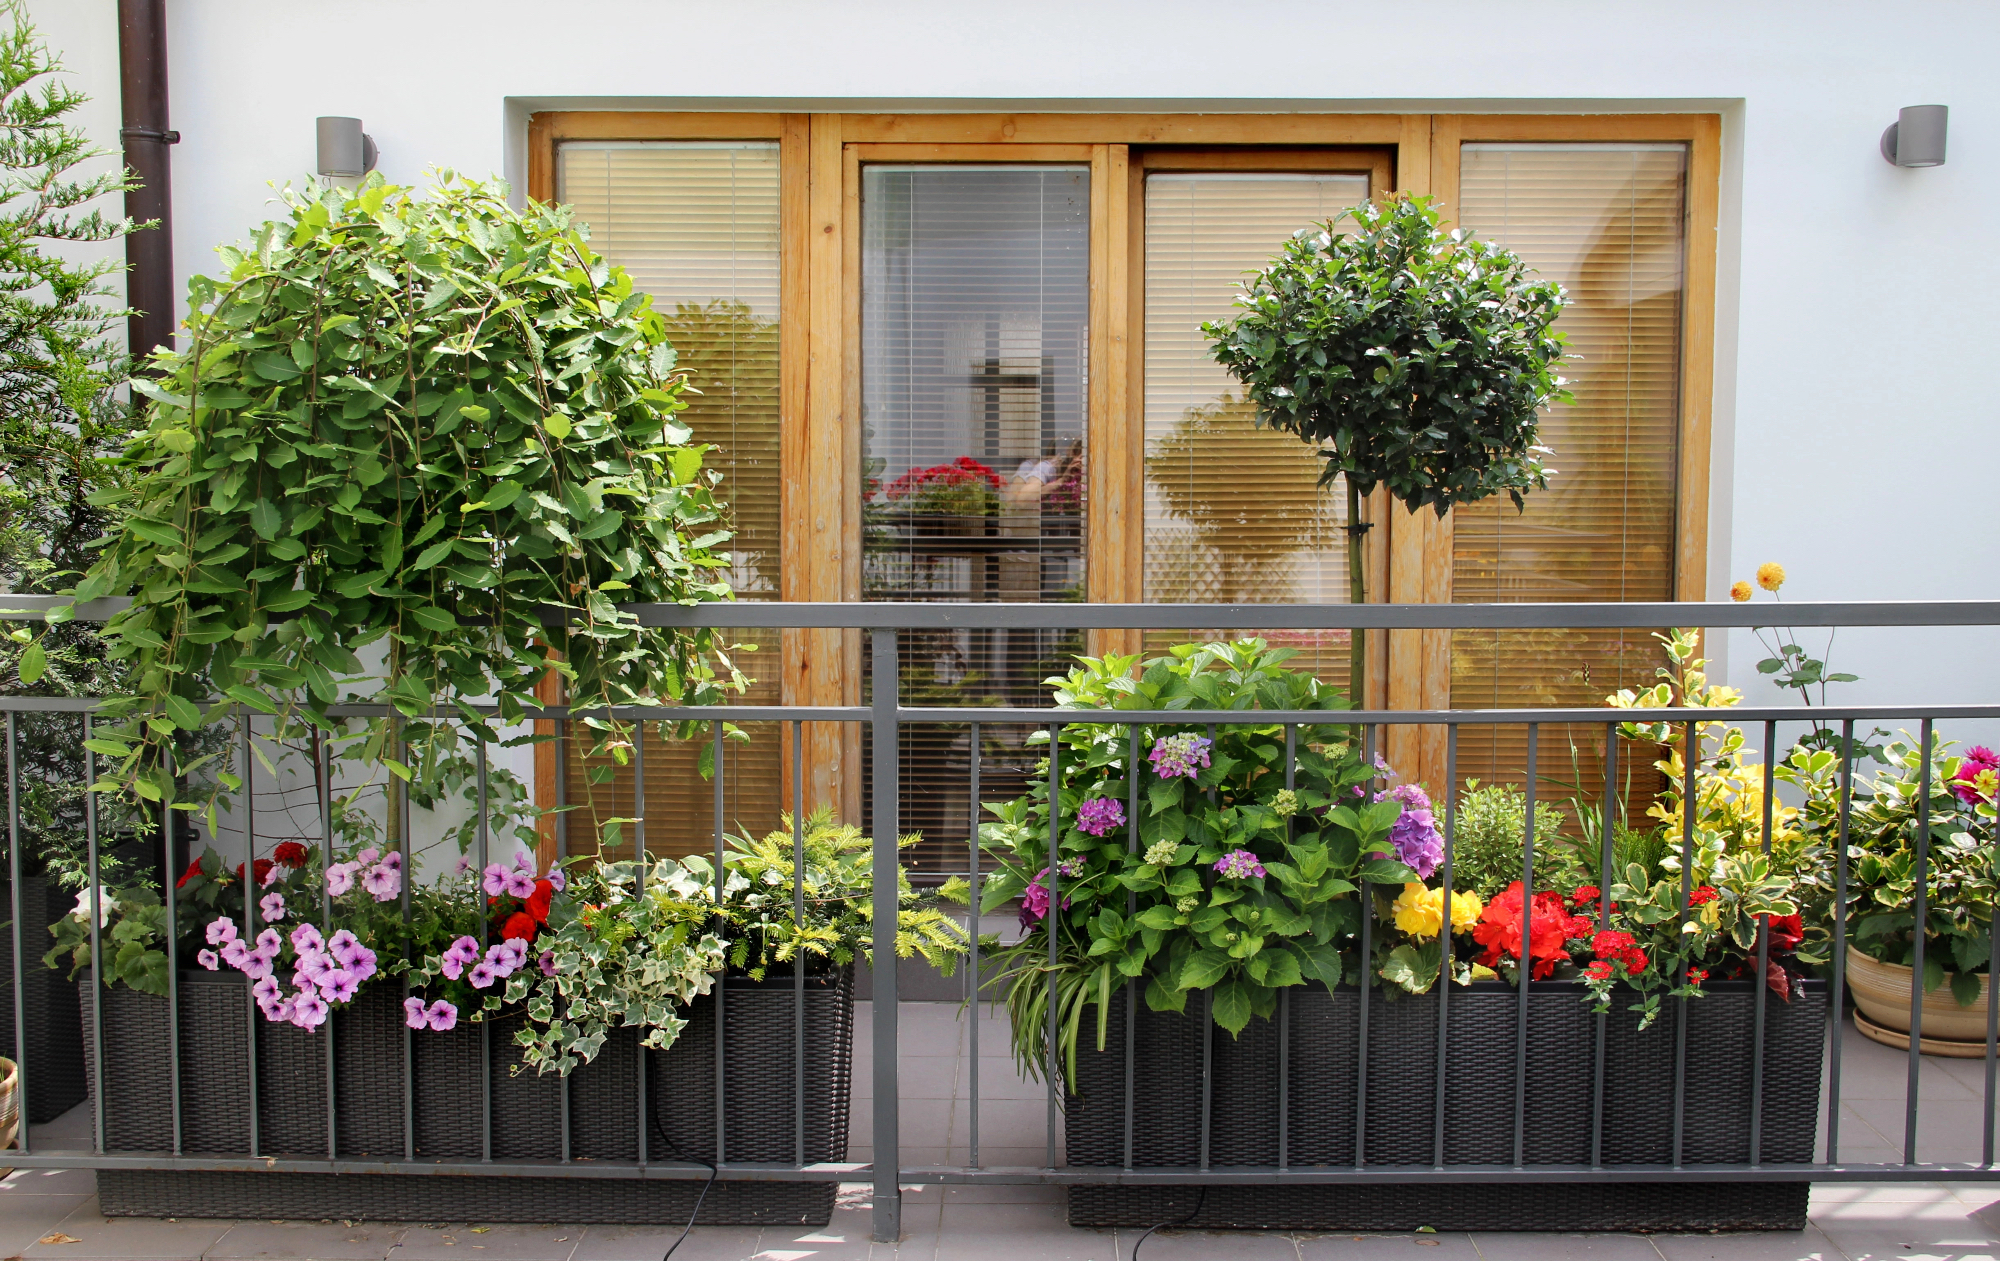 Ko zmanjka prostora za sobne rastline, se lotiš še balkona.